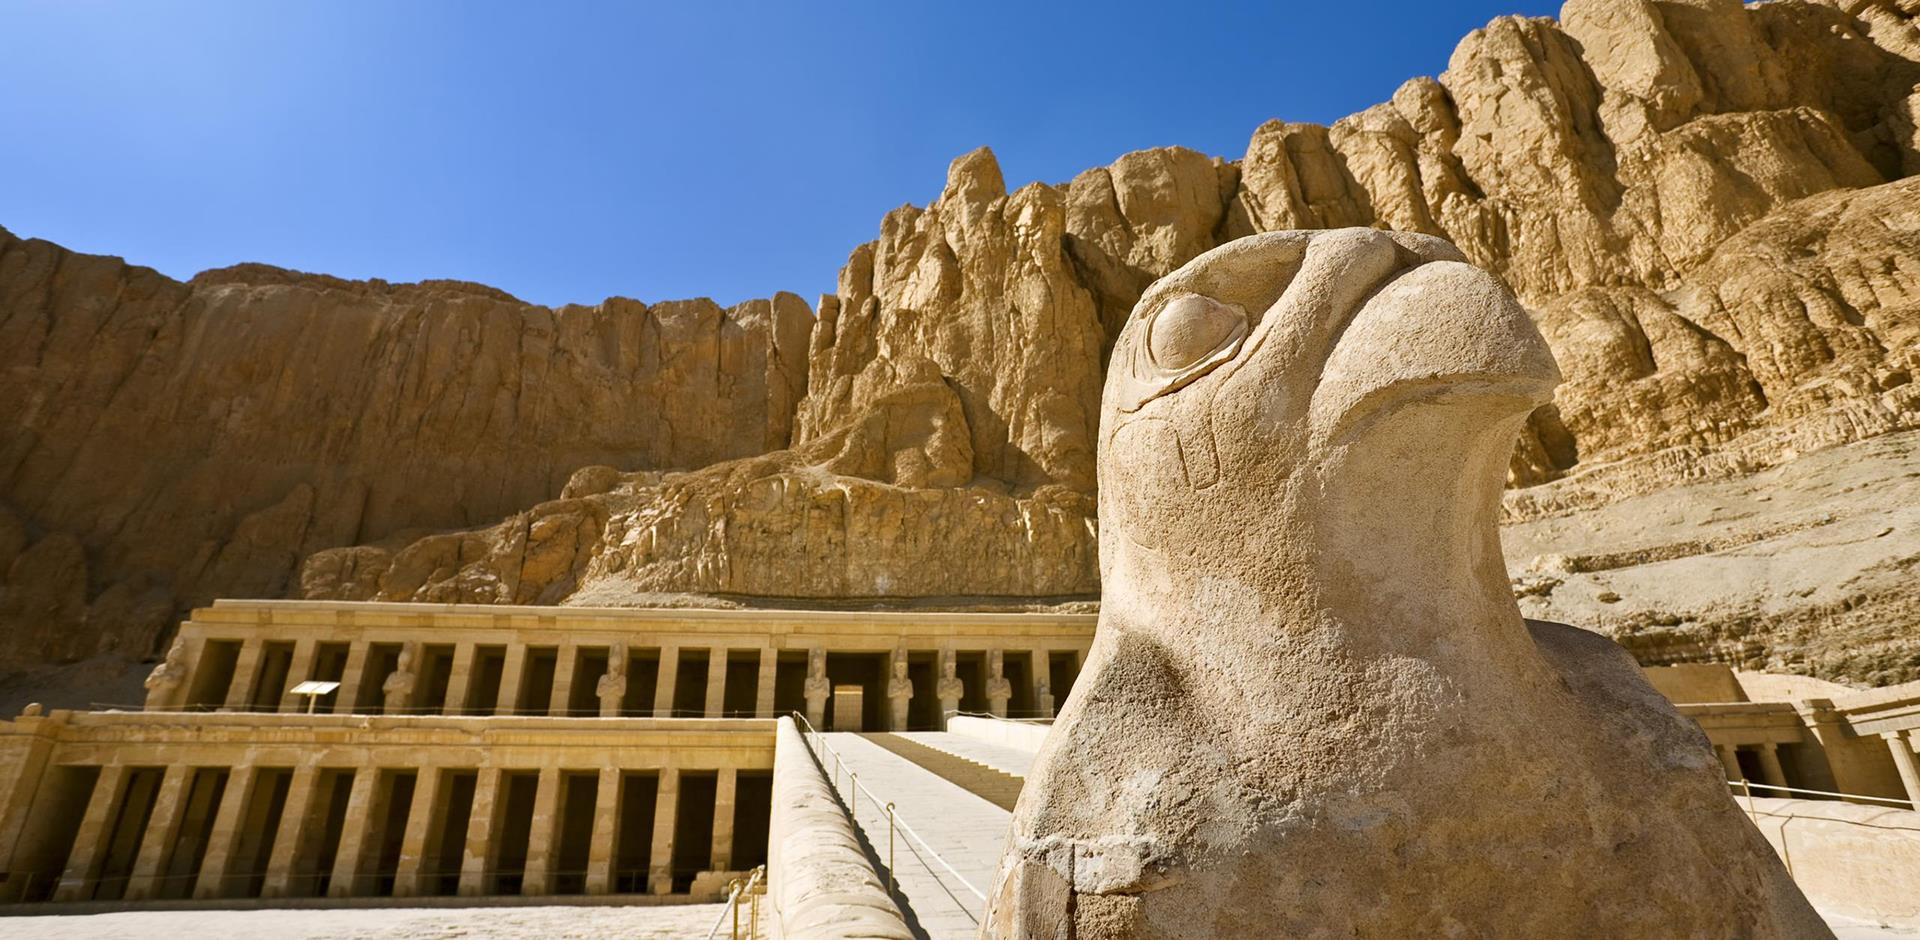 Temple of Hatshepsut, Luxor, Egypt